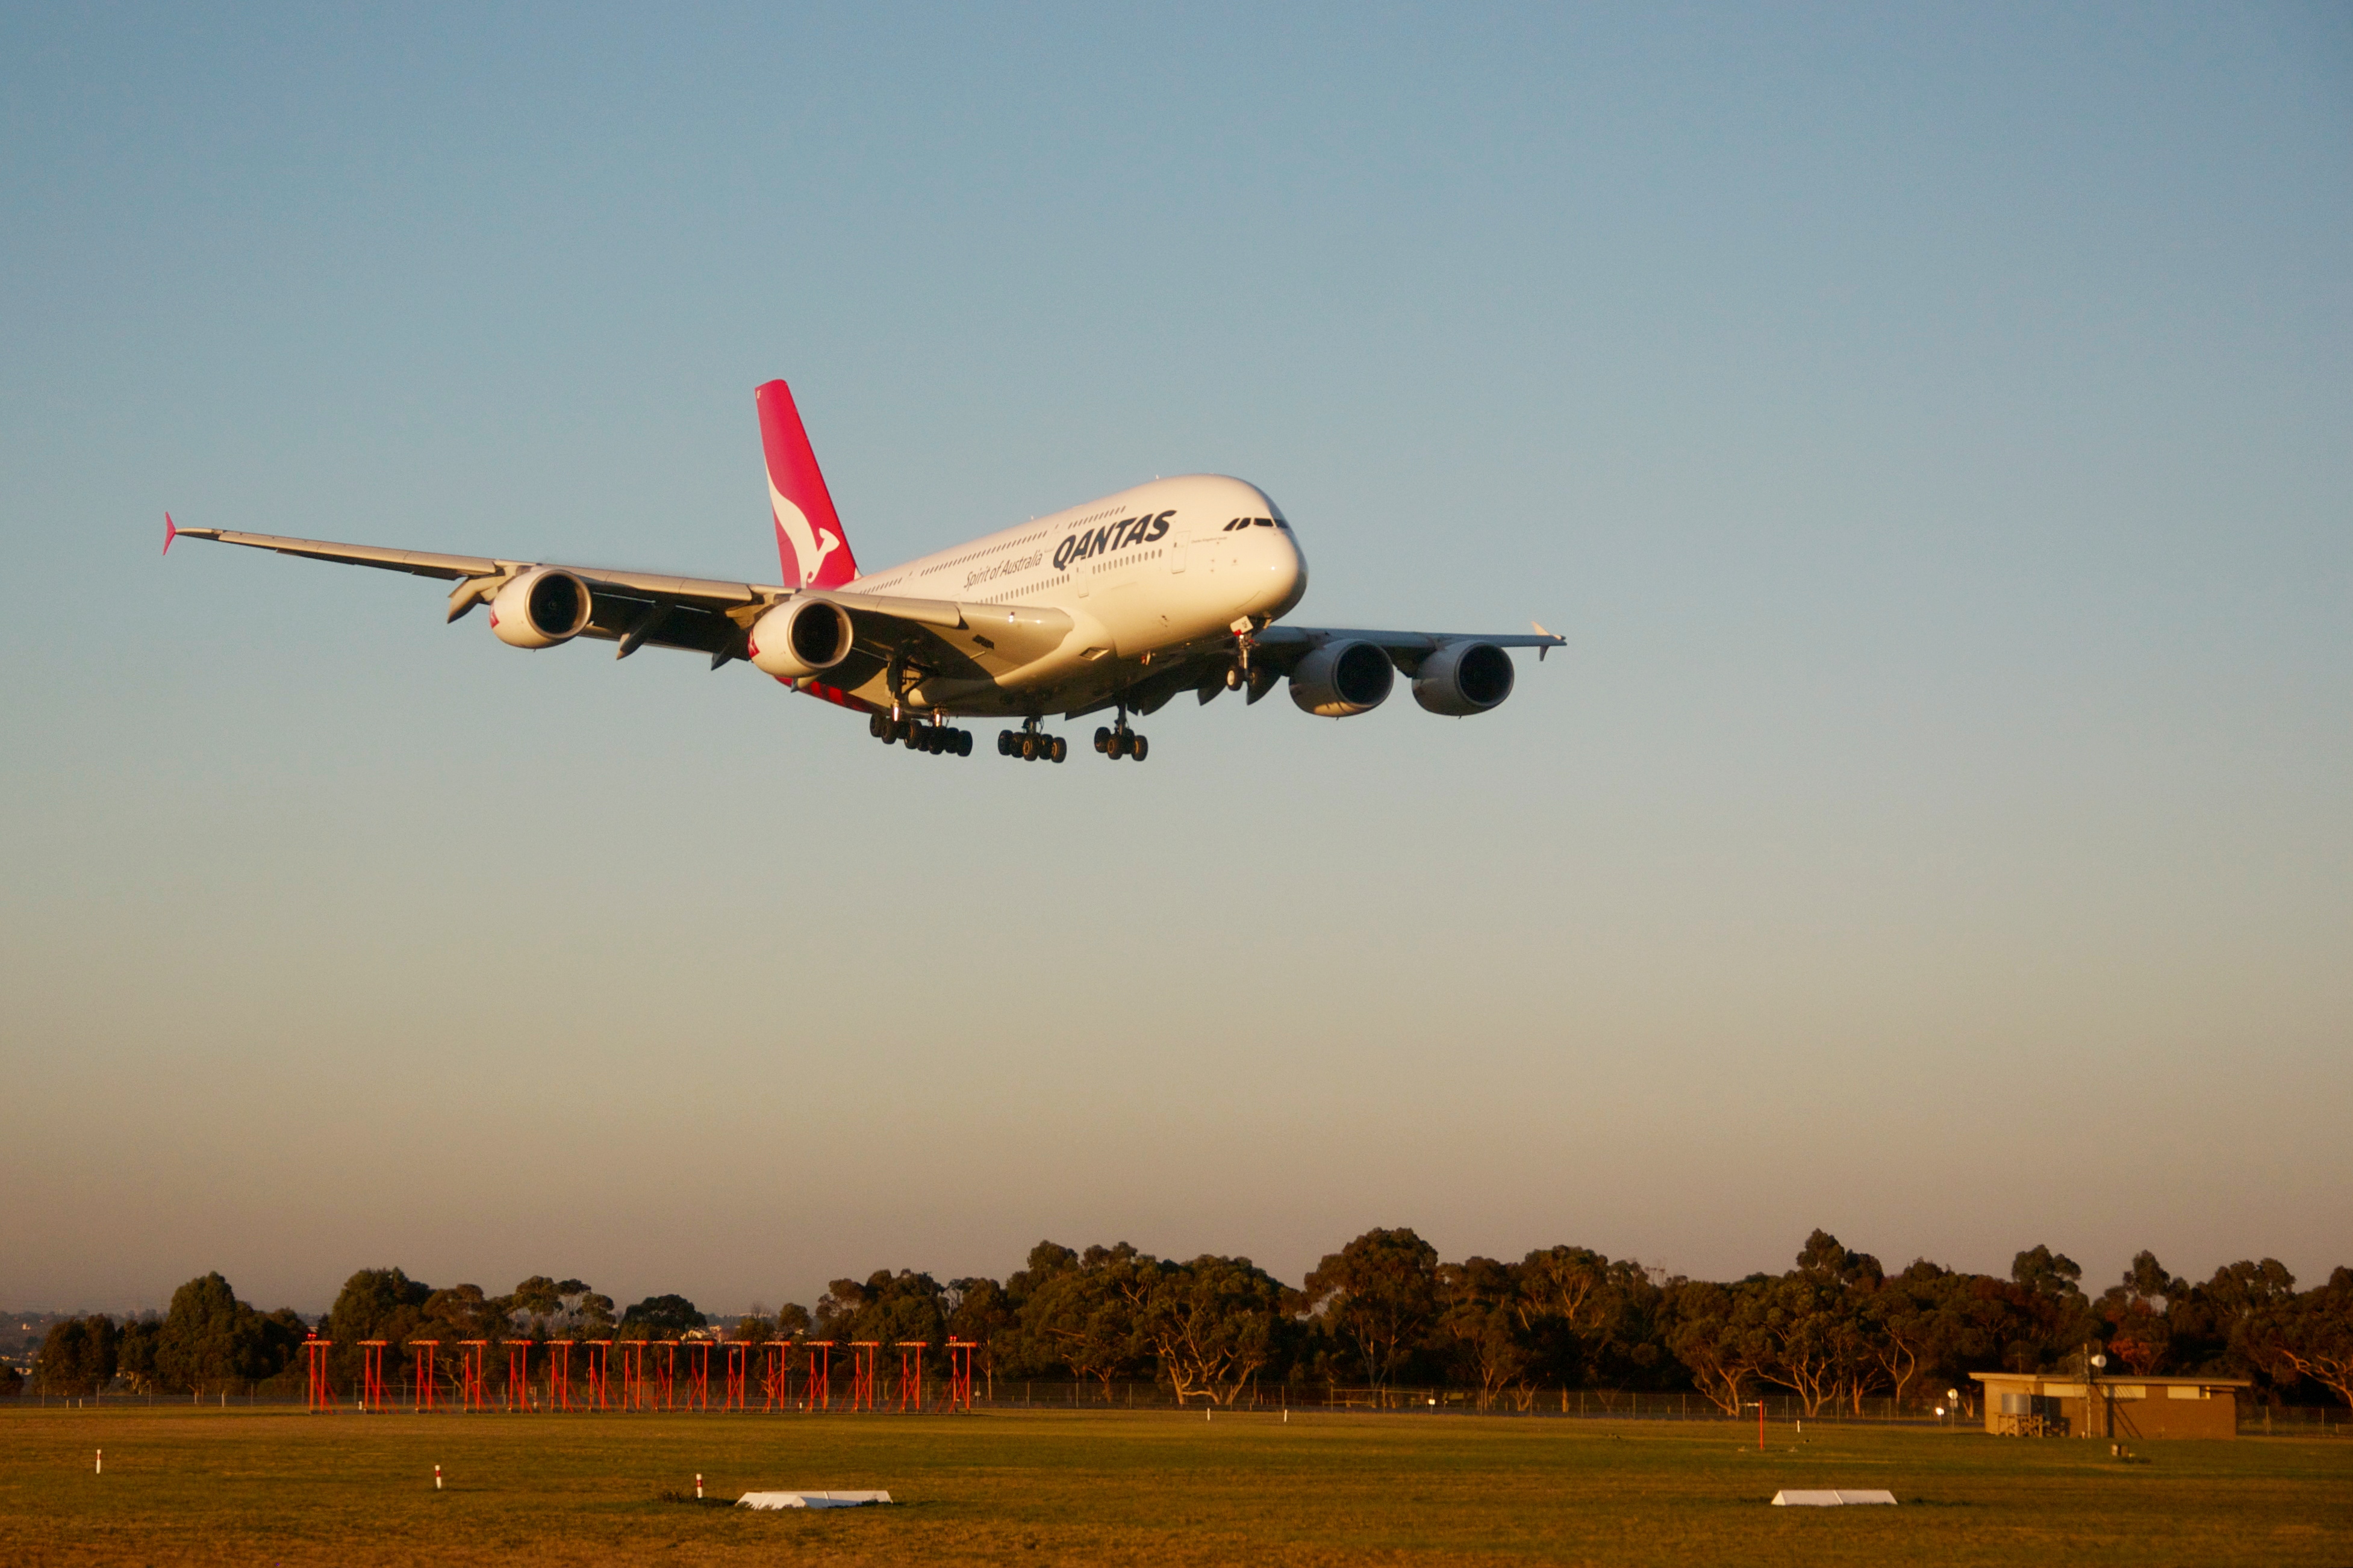 Qantas A380 lands at Melbourne Airport edit